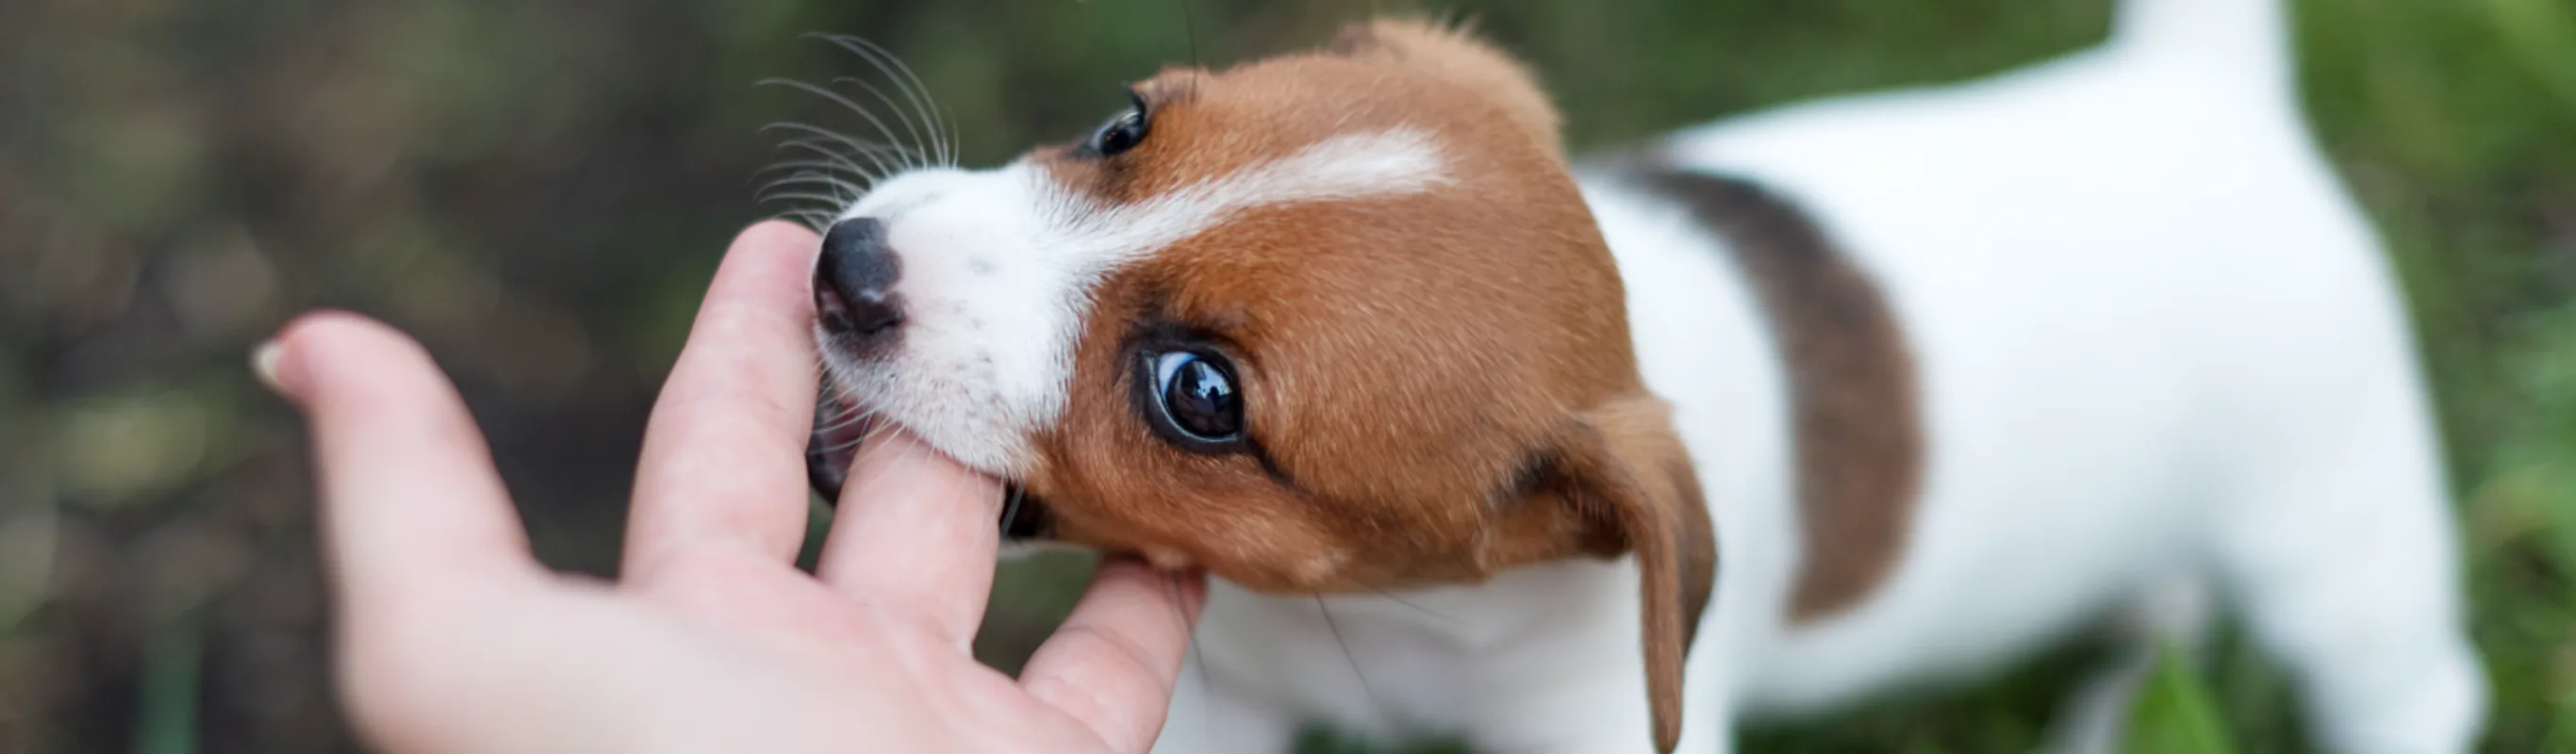 Dog biting a hand 